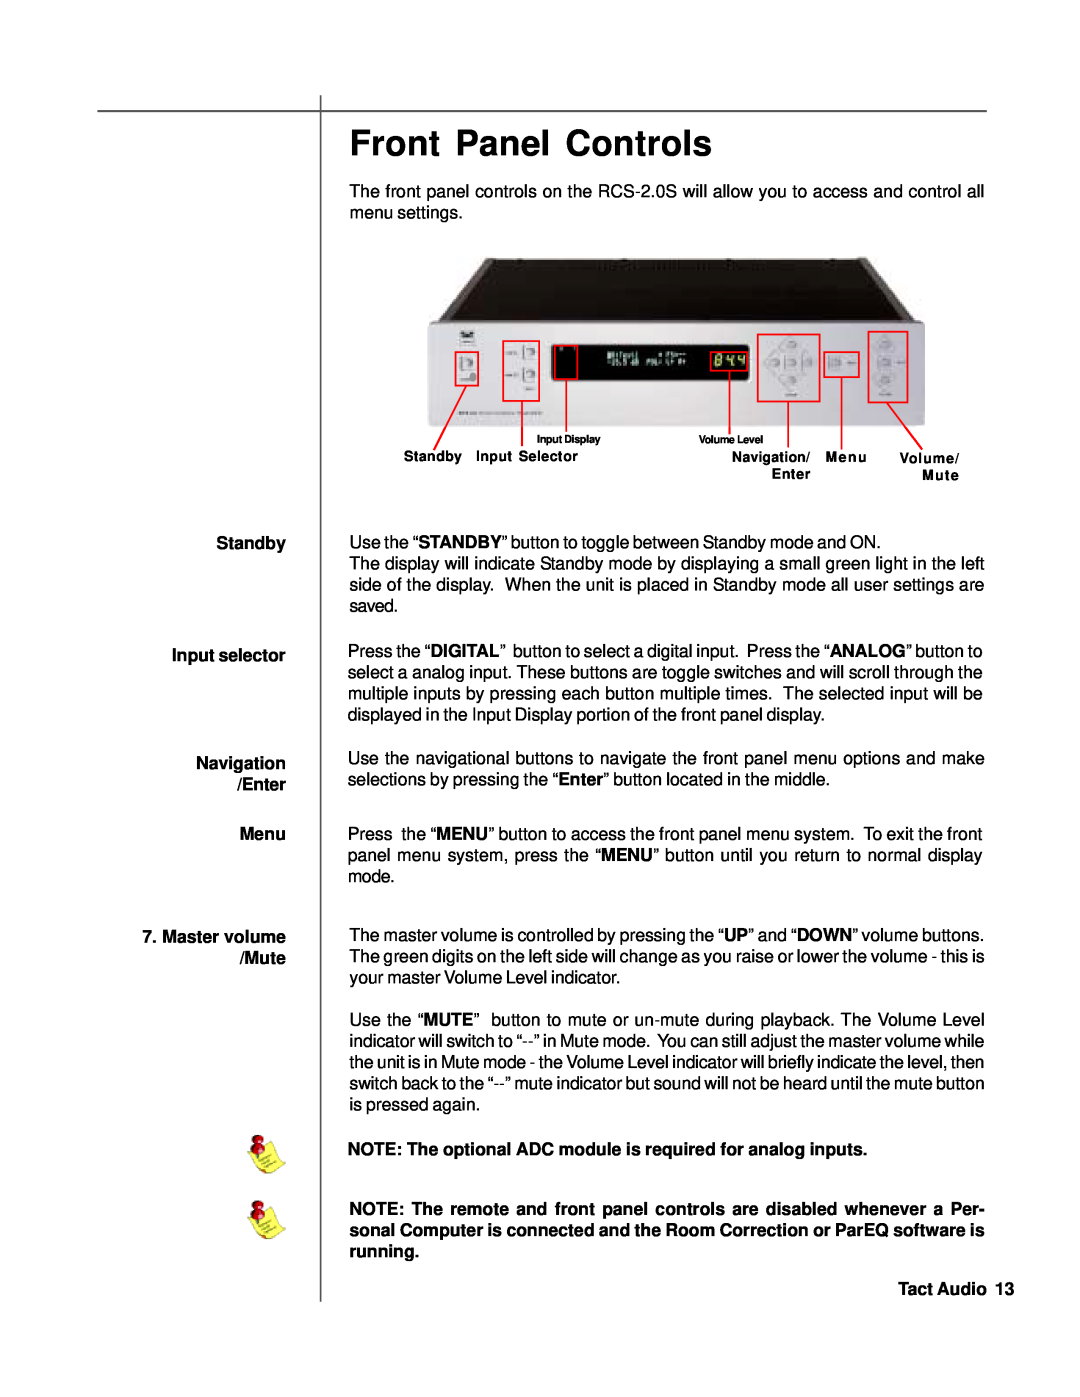 TacT Audio RCS 2.0S owner manual Front Panel Controls, Standby Input selector, Menu, Tact Audio 